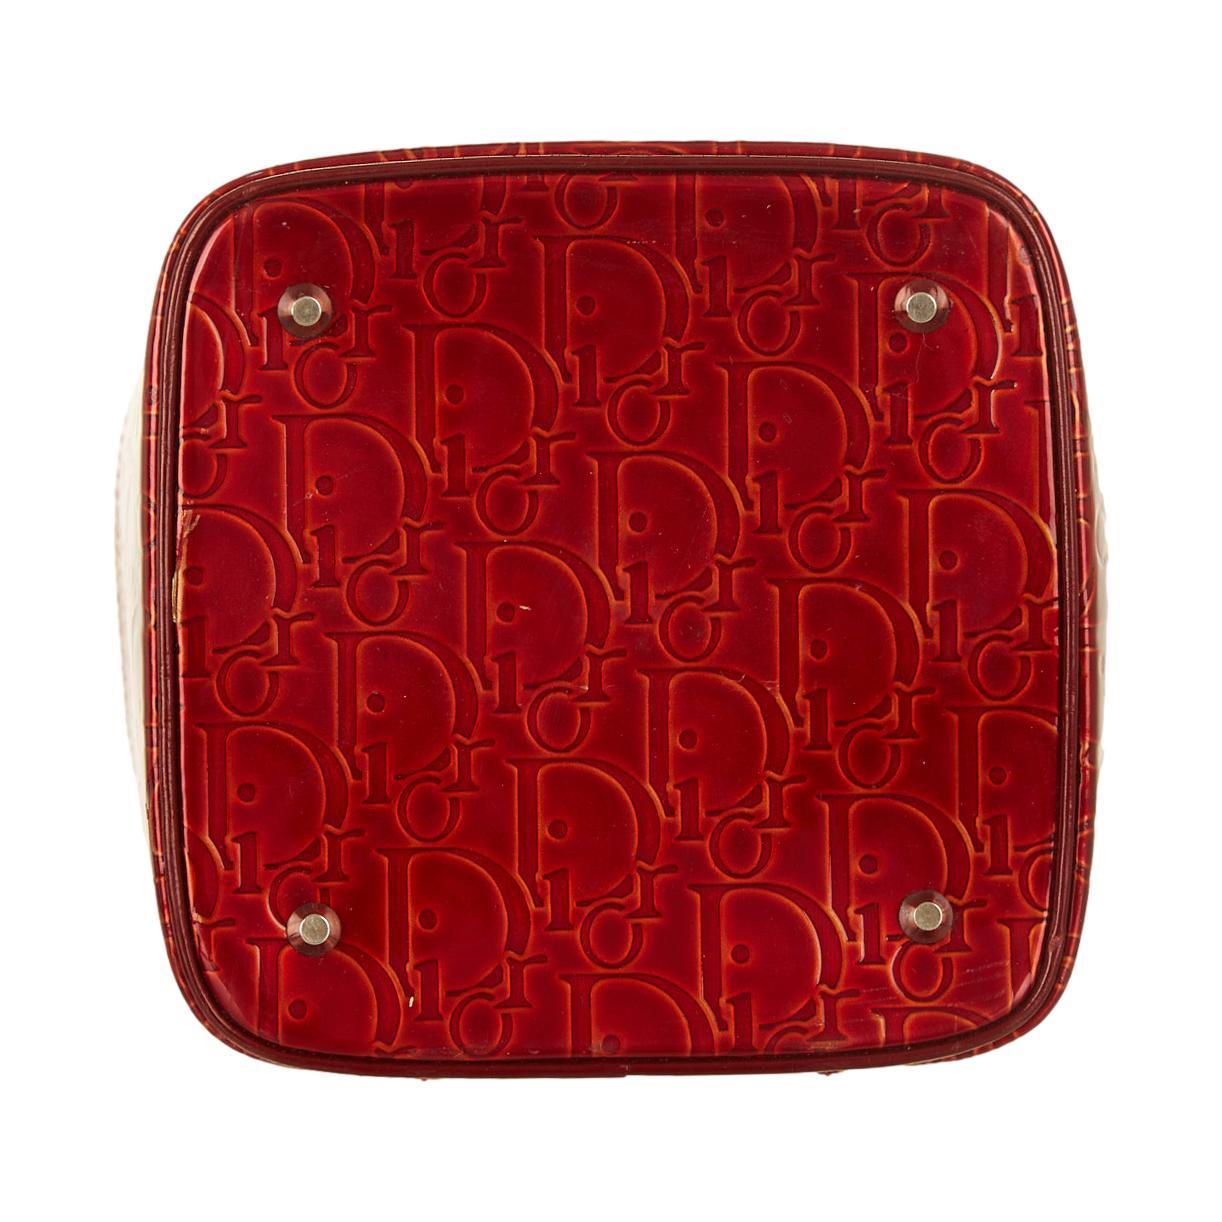 Dior Red Trotter Vanity Bag